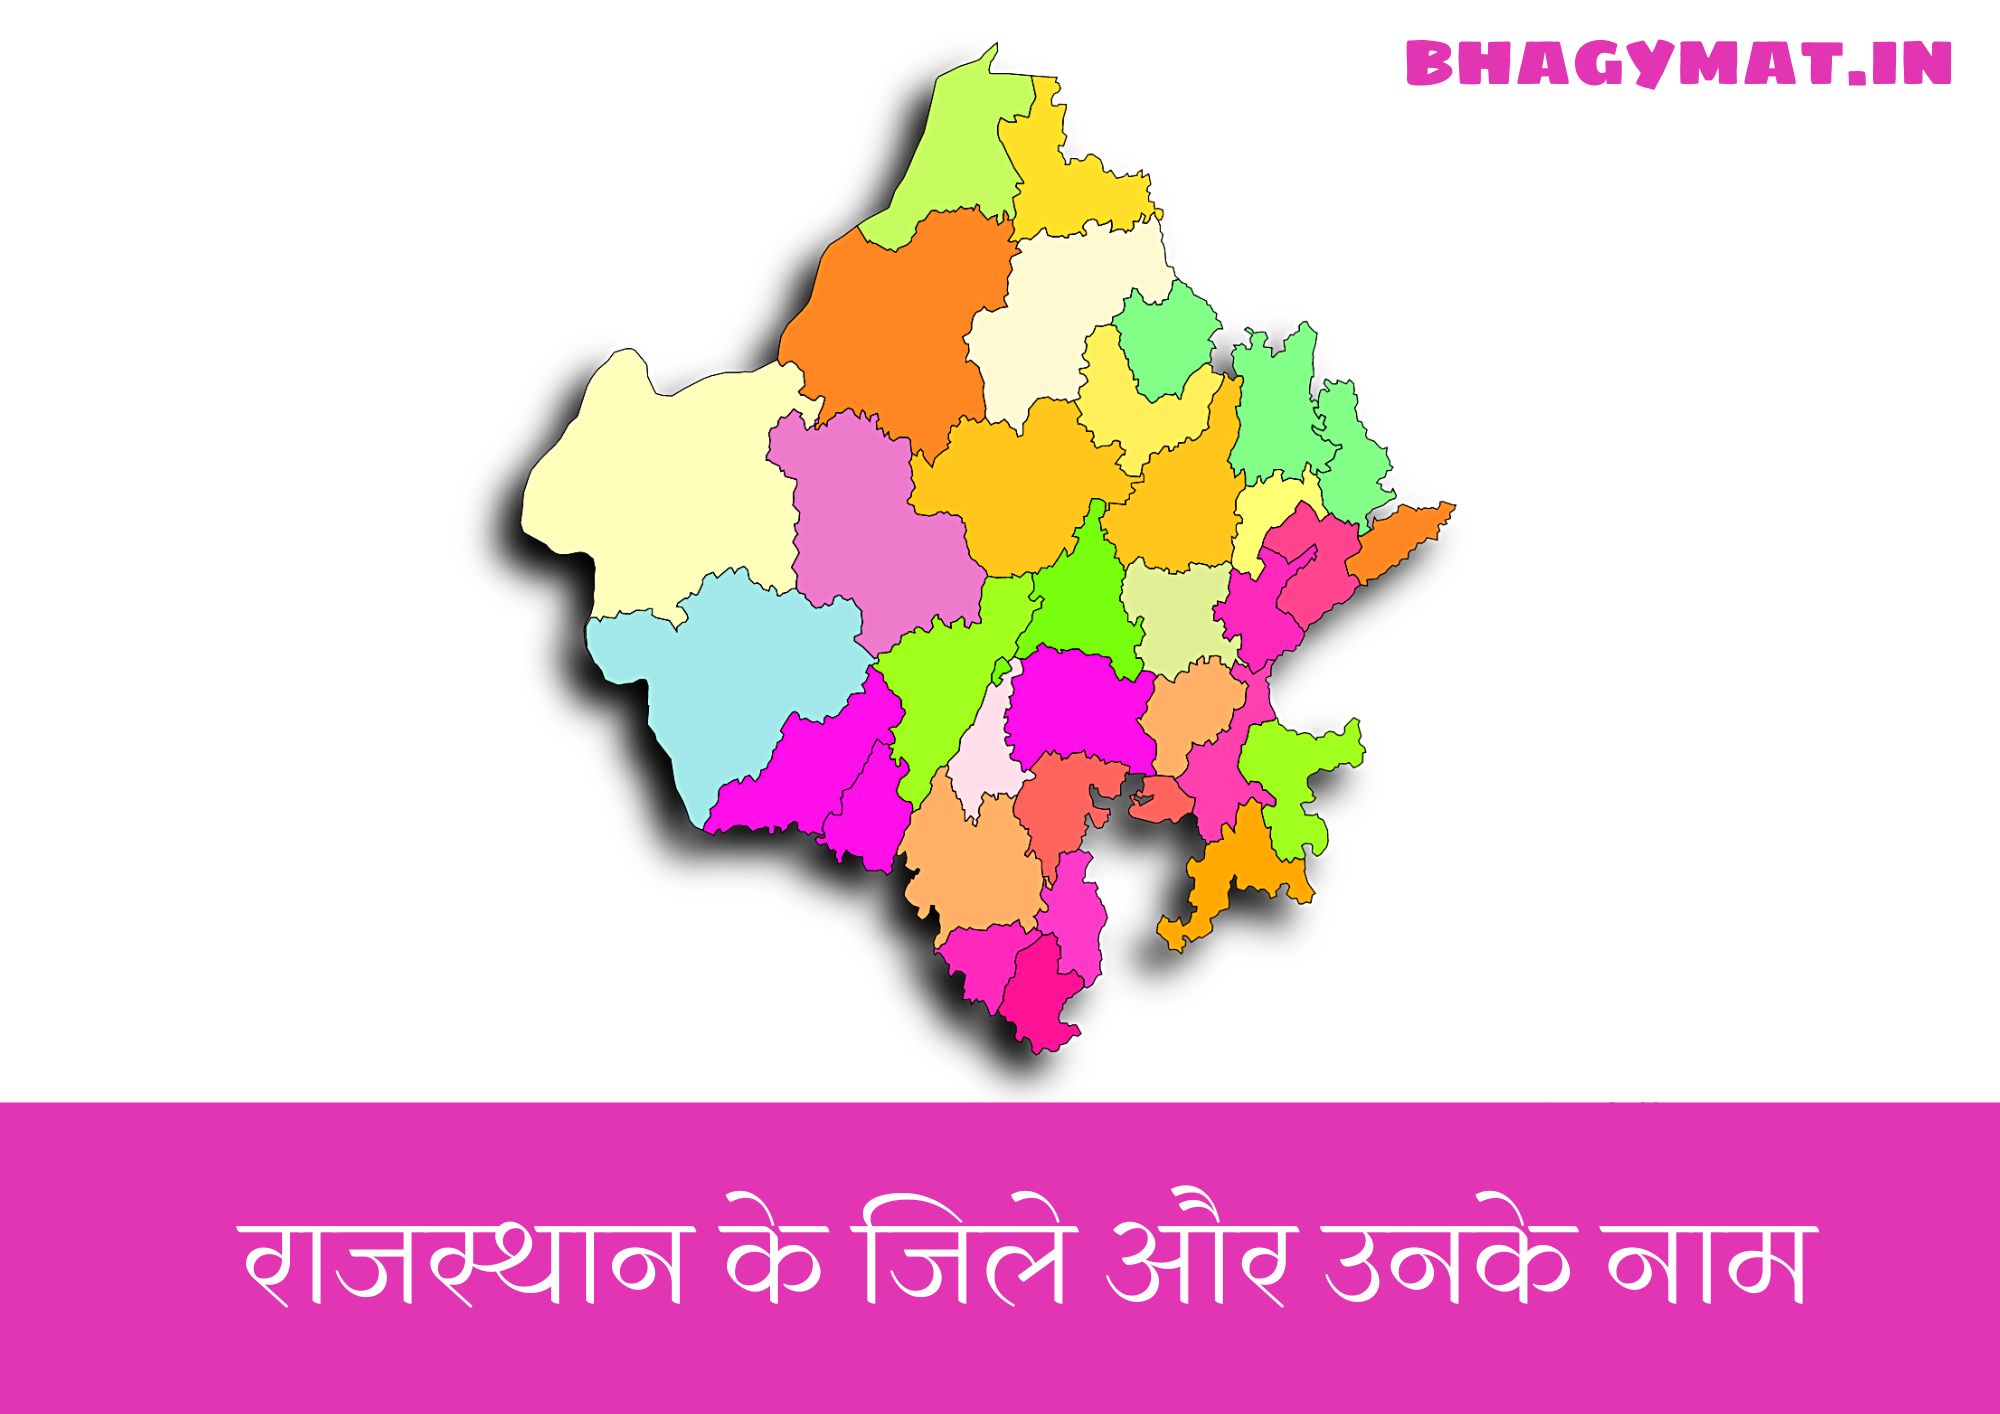 [2023] राजस्थान में कितने जिले हैं? (Rajasthan Mein Kitne Jile Hai) - Rajasthan Me Kitne Jile Hai